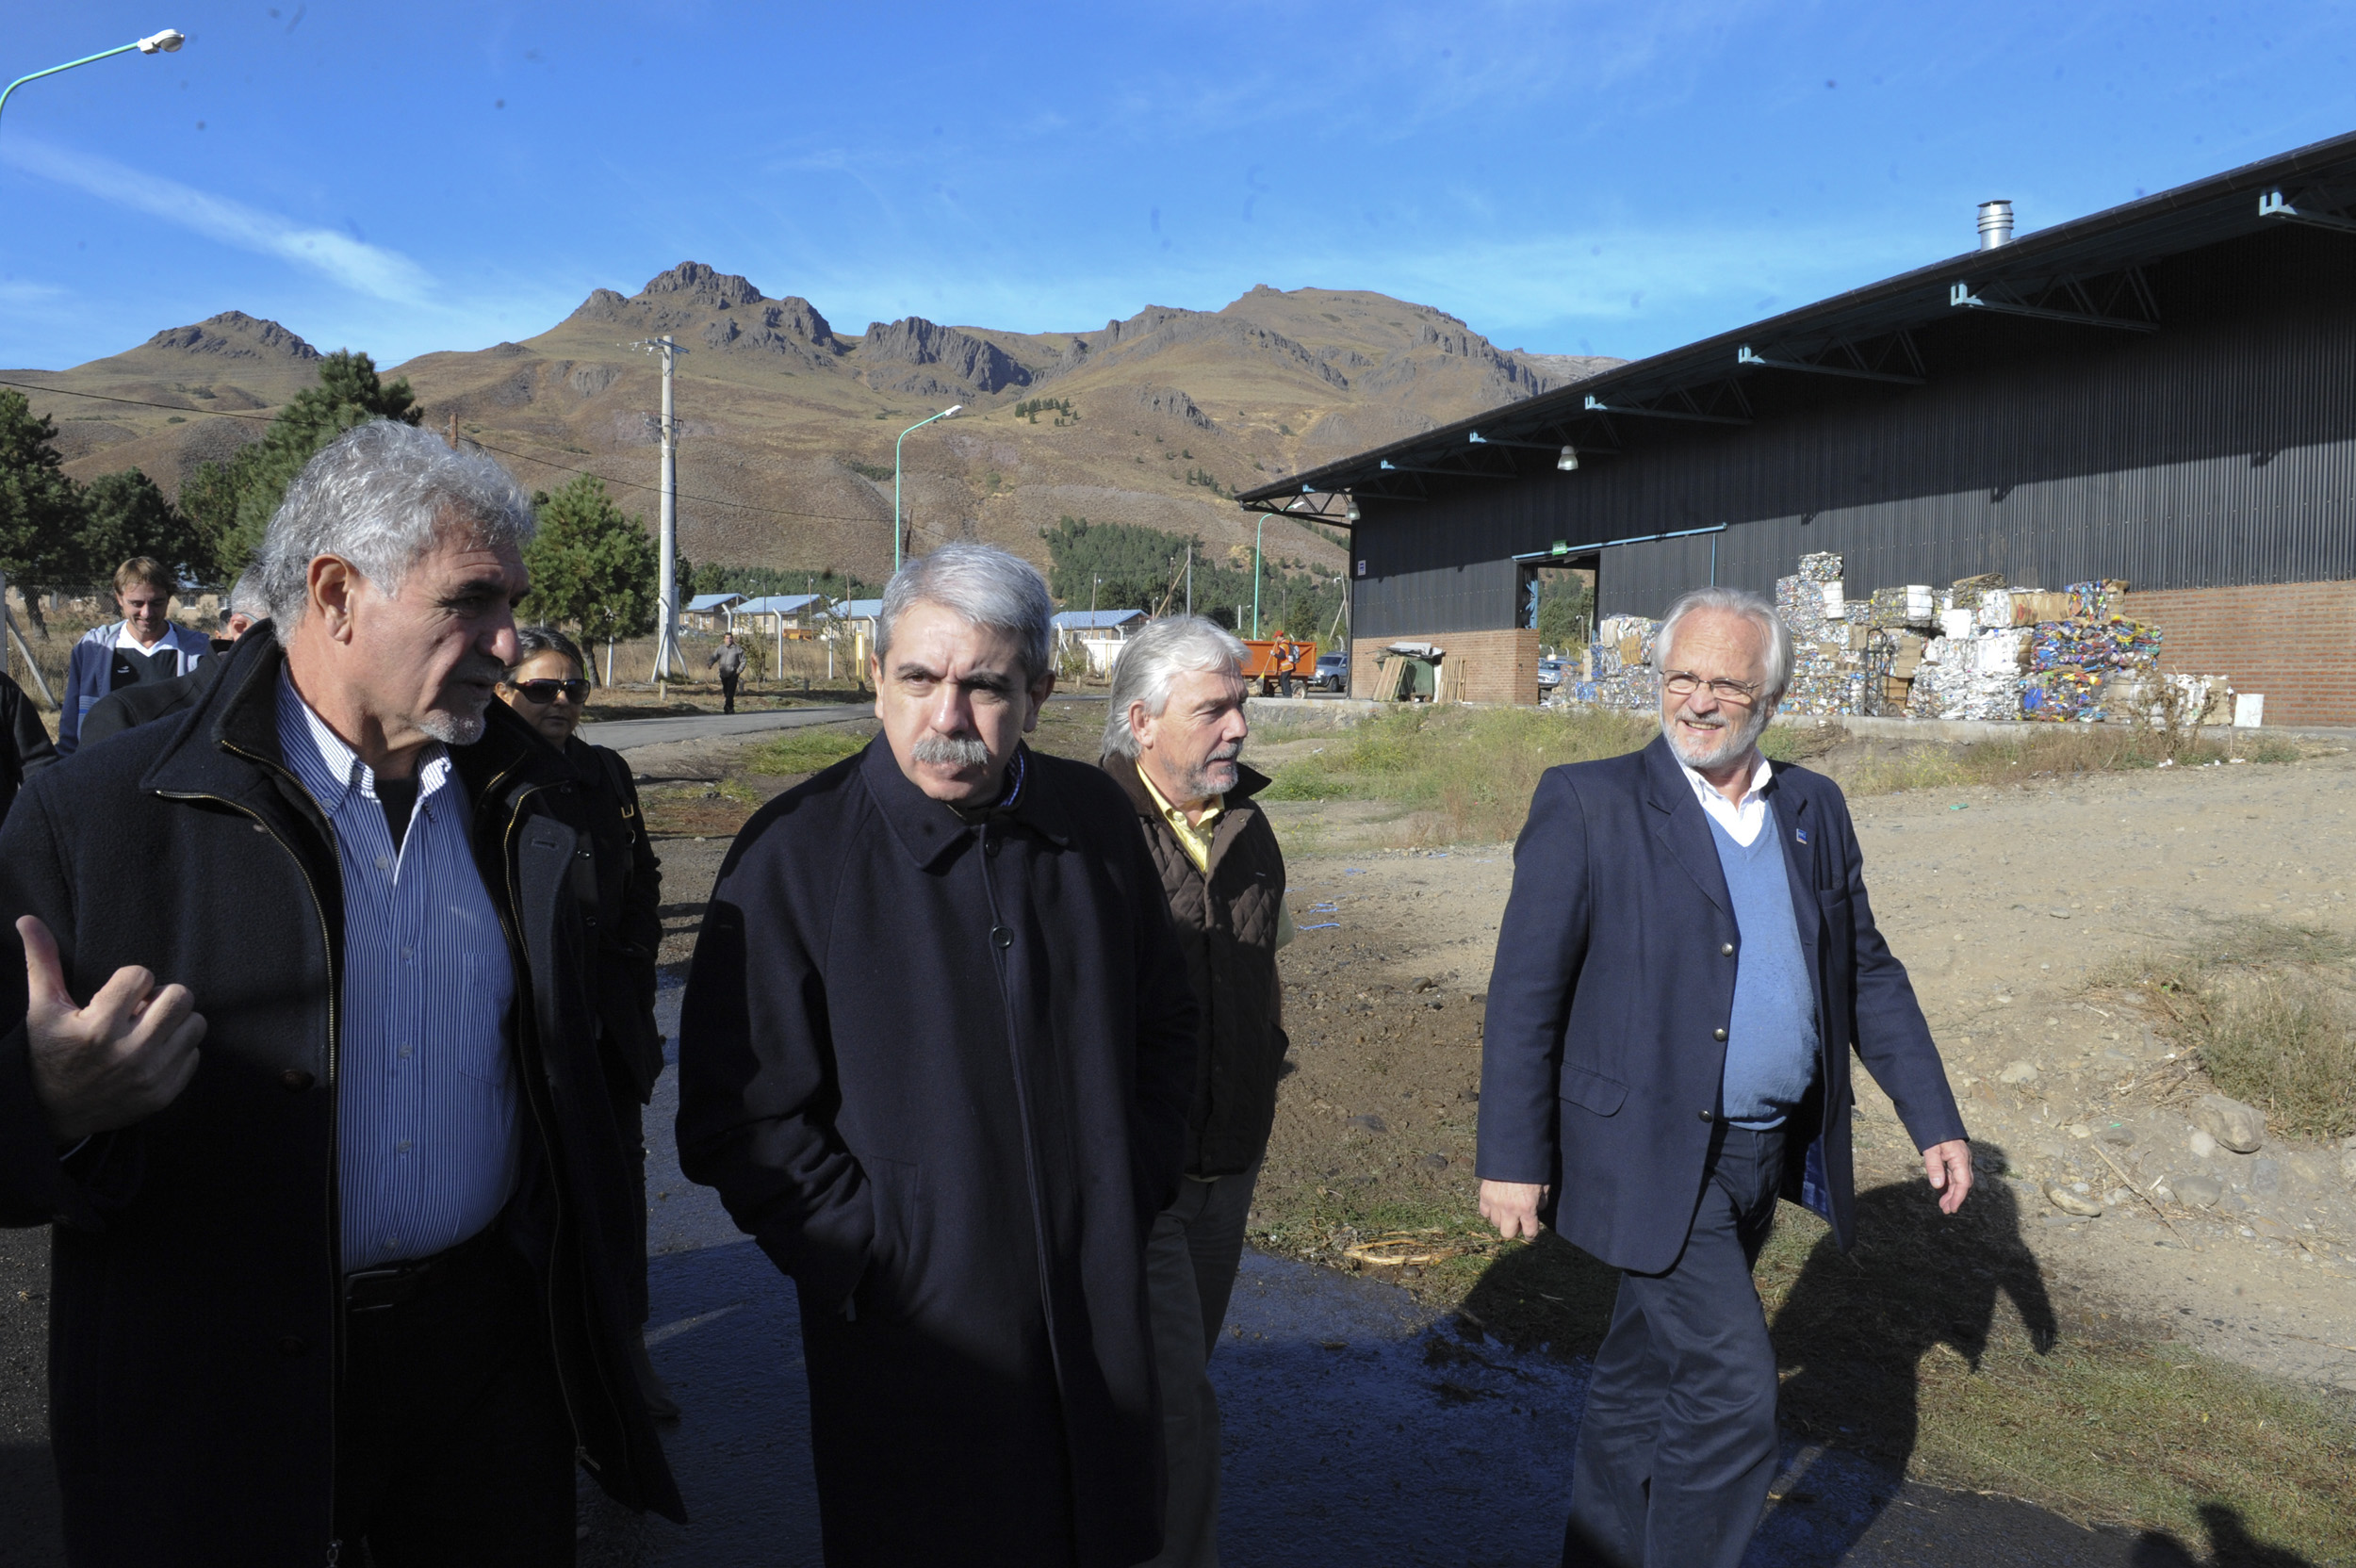 El Jefe de Gabinete visitó San Martín de los Andes